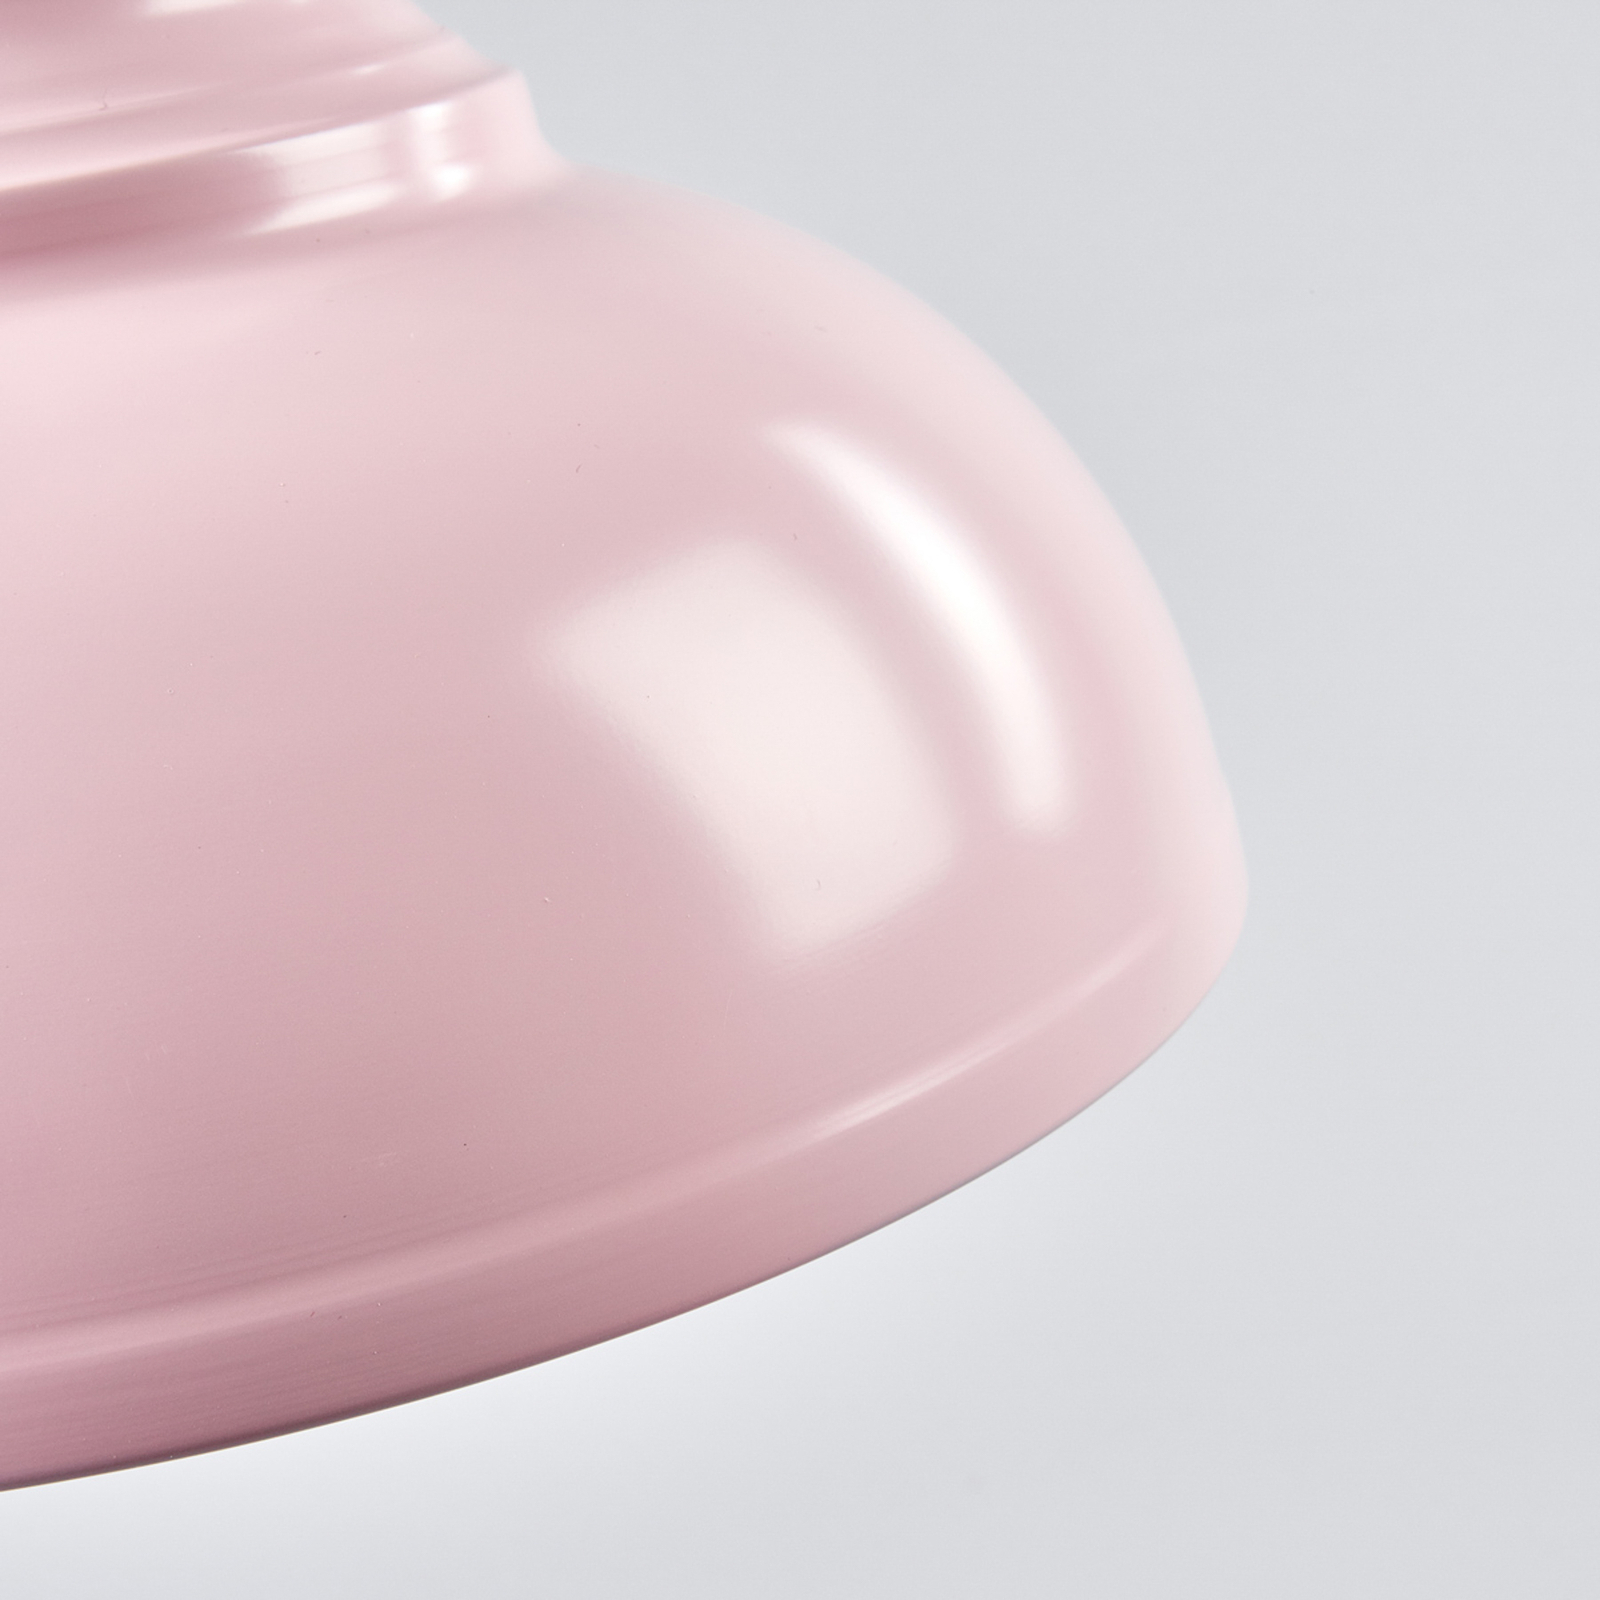 Lámpara colgante Isla con pantalla de metal en color rosado